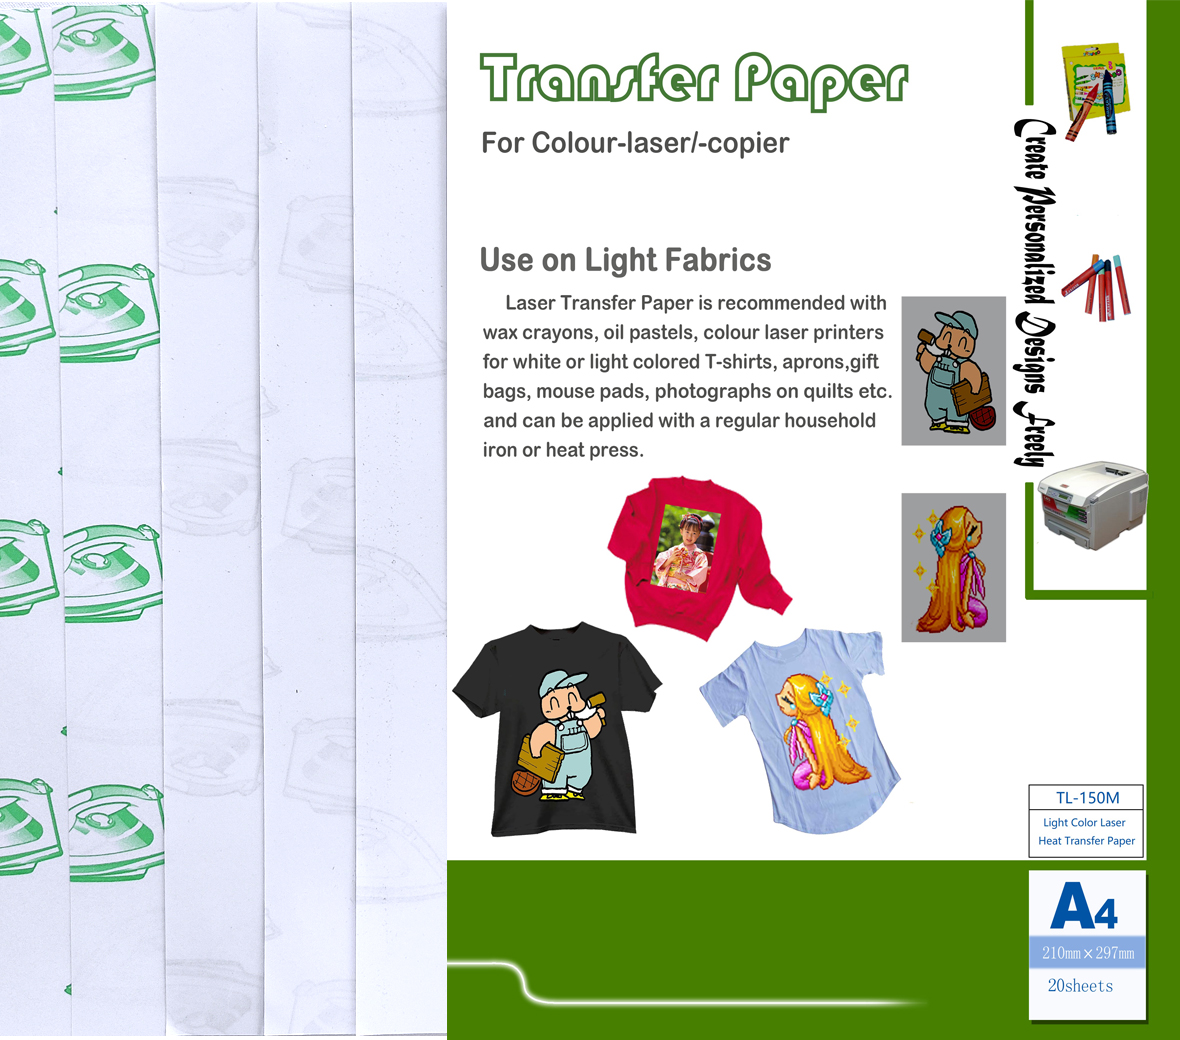 Light Color Laser Transfer Paper